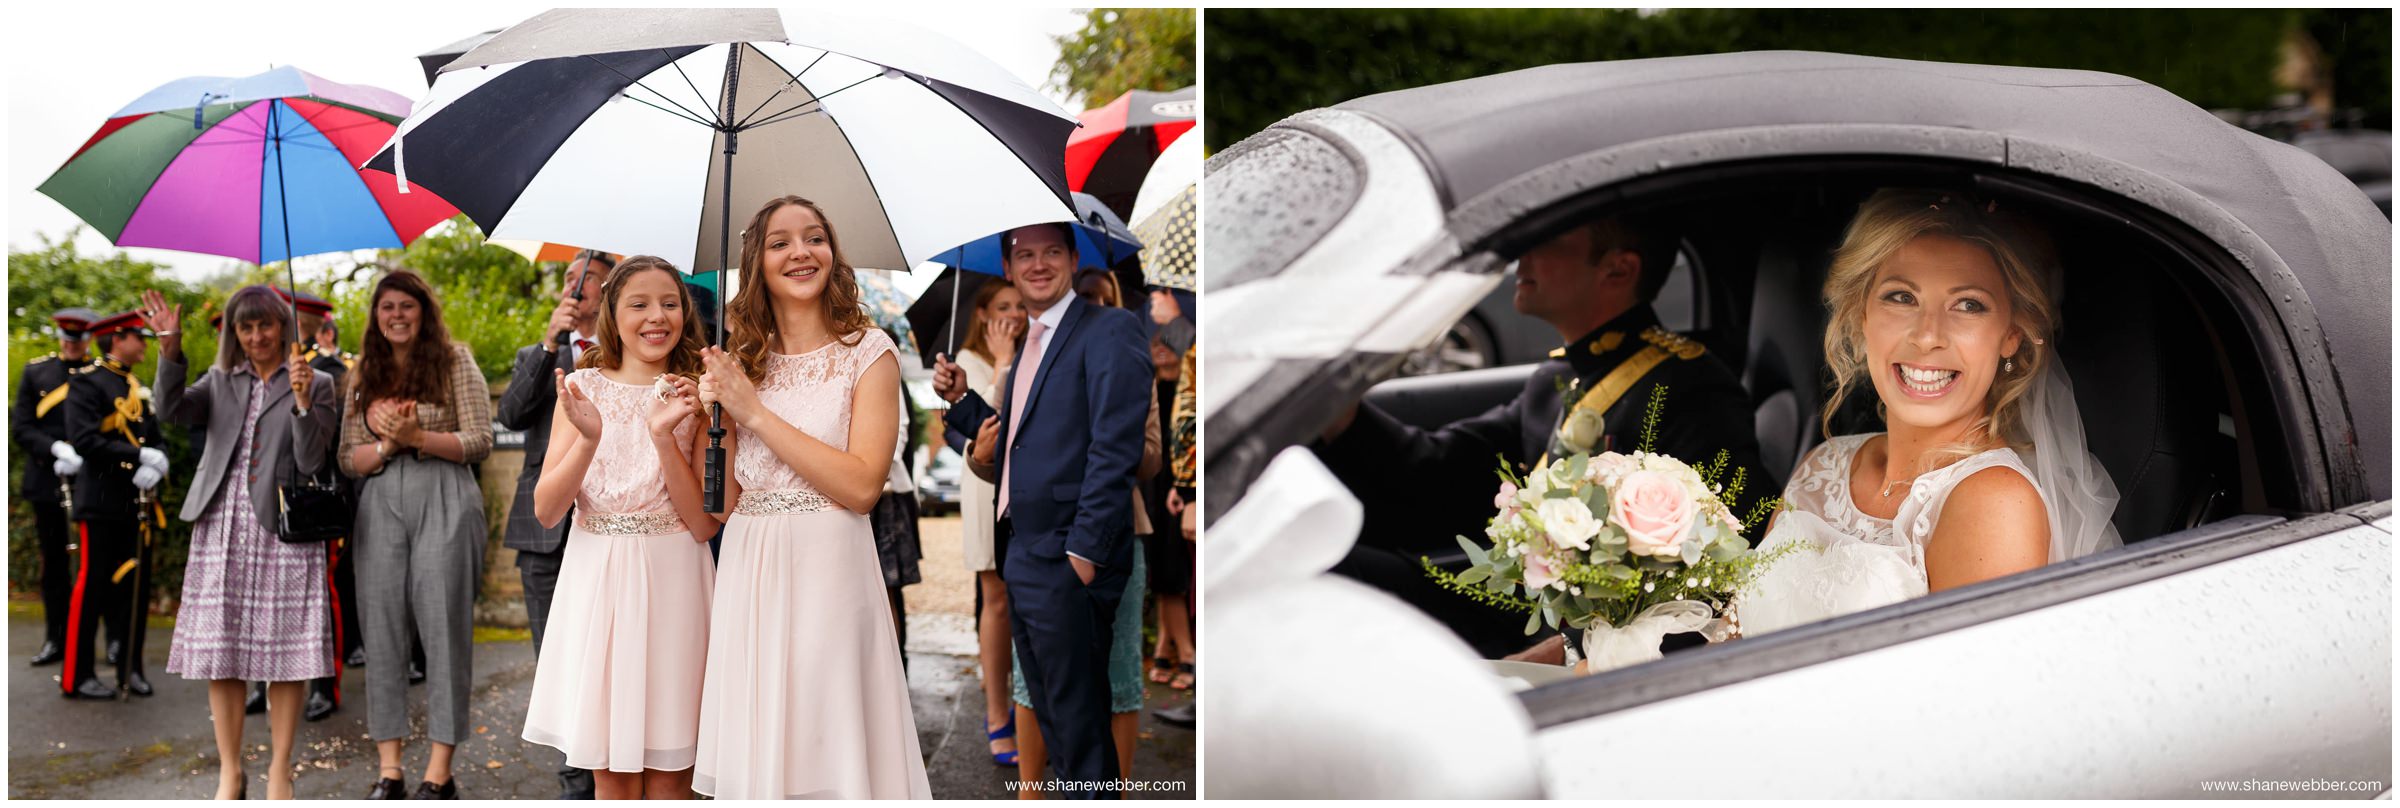 Rainy wedding pictures